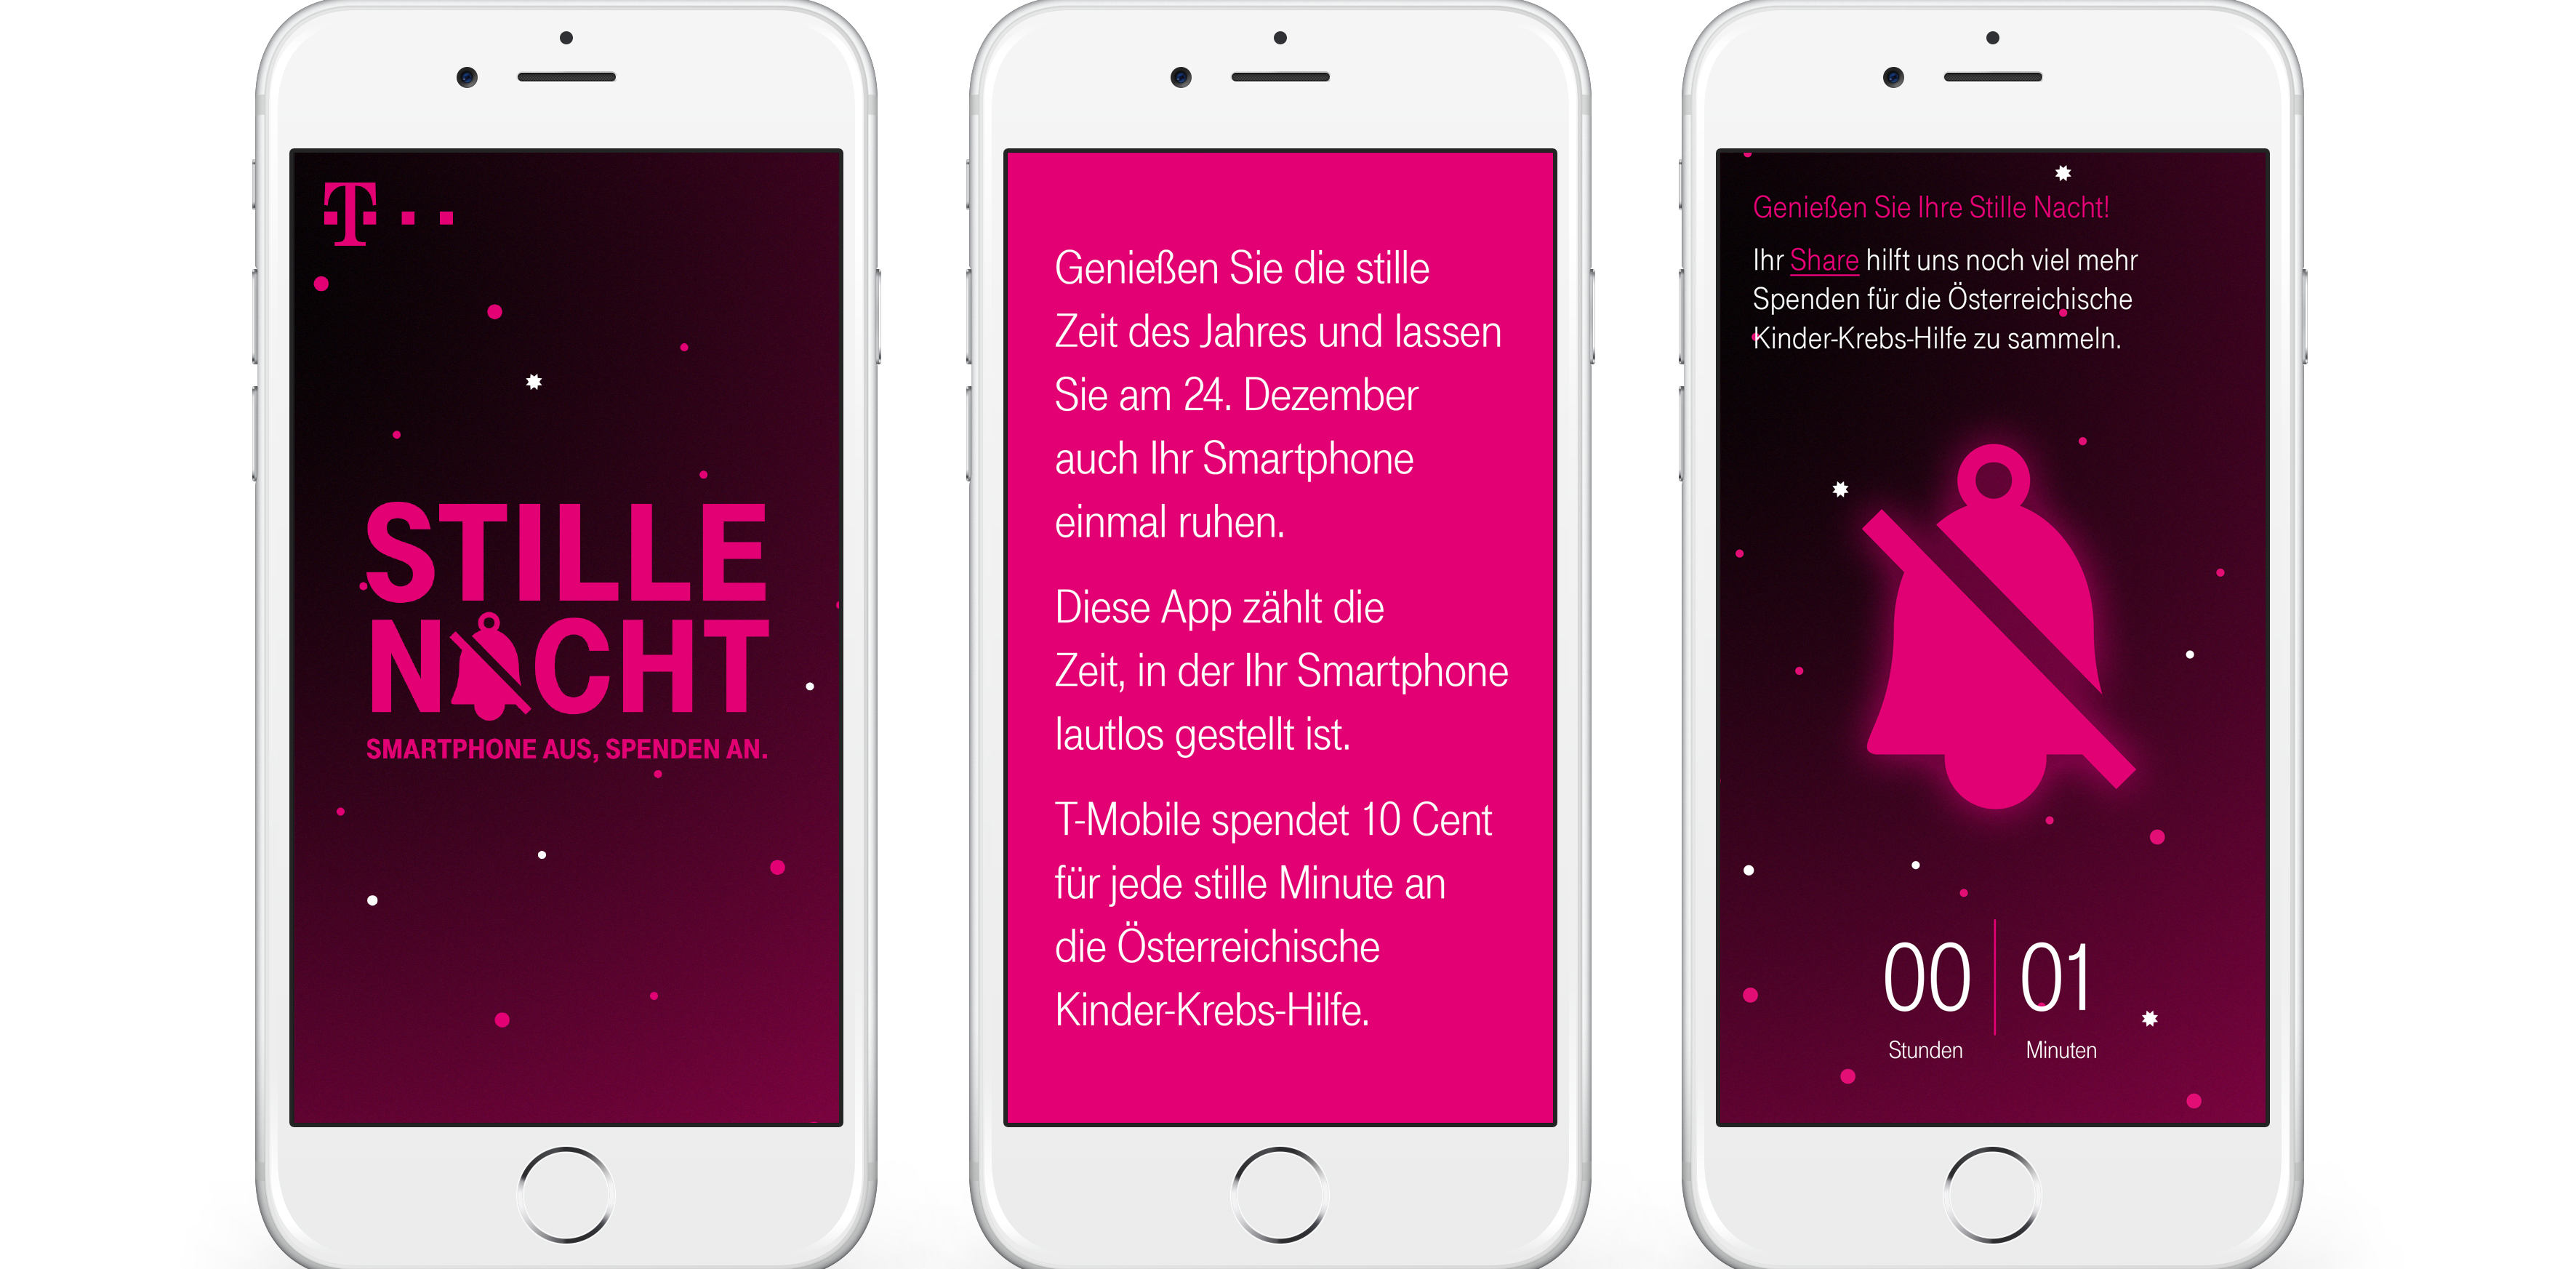 Smartphone aus, Spenden an: T-Mobile spendet für jede stille Minute an die Österreichische Kinder-Krebs-Hilfe